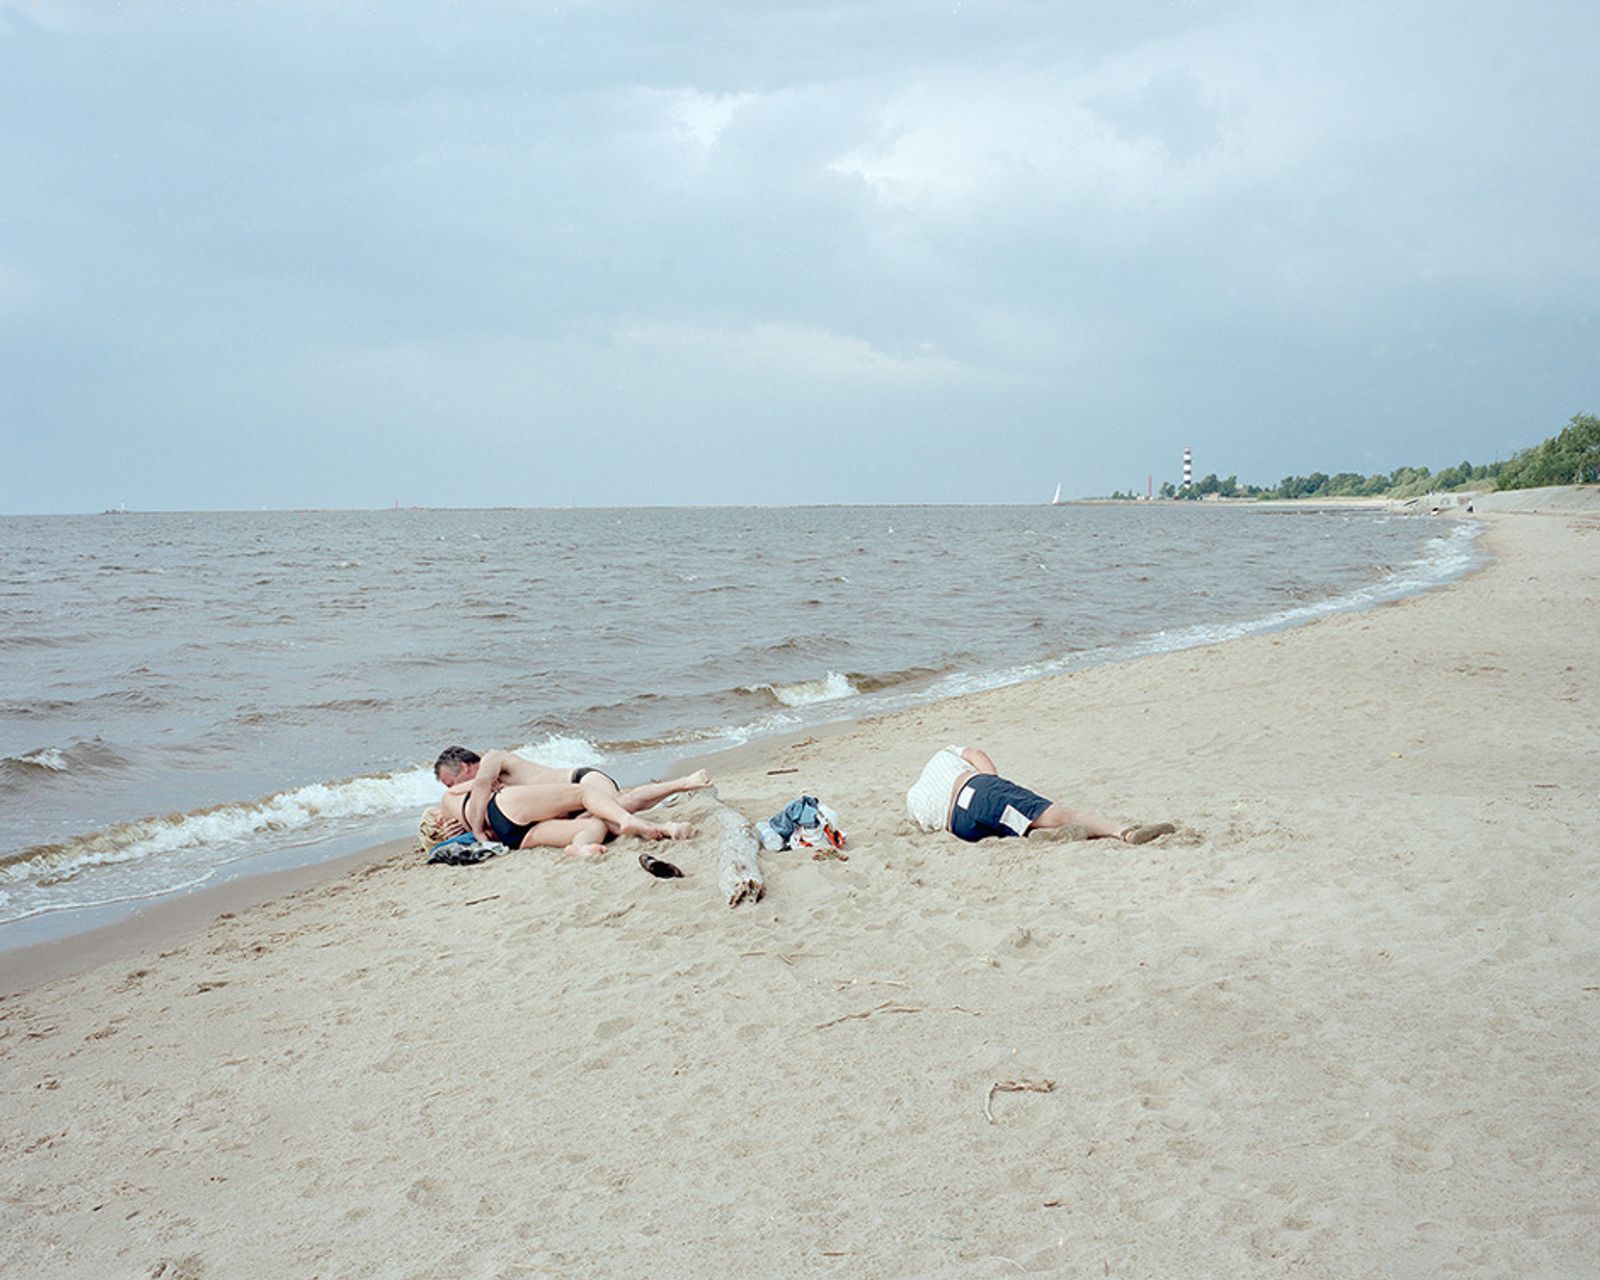 © Andrejs Strokins - Daugavgrīva beach, 2013